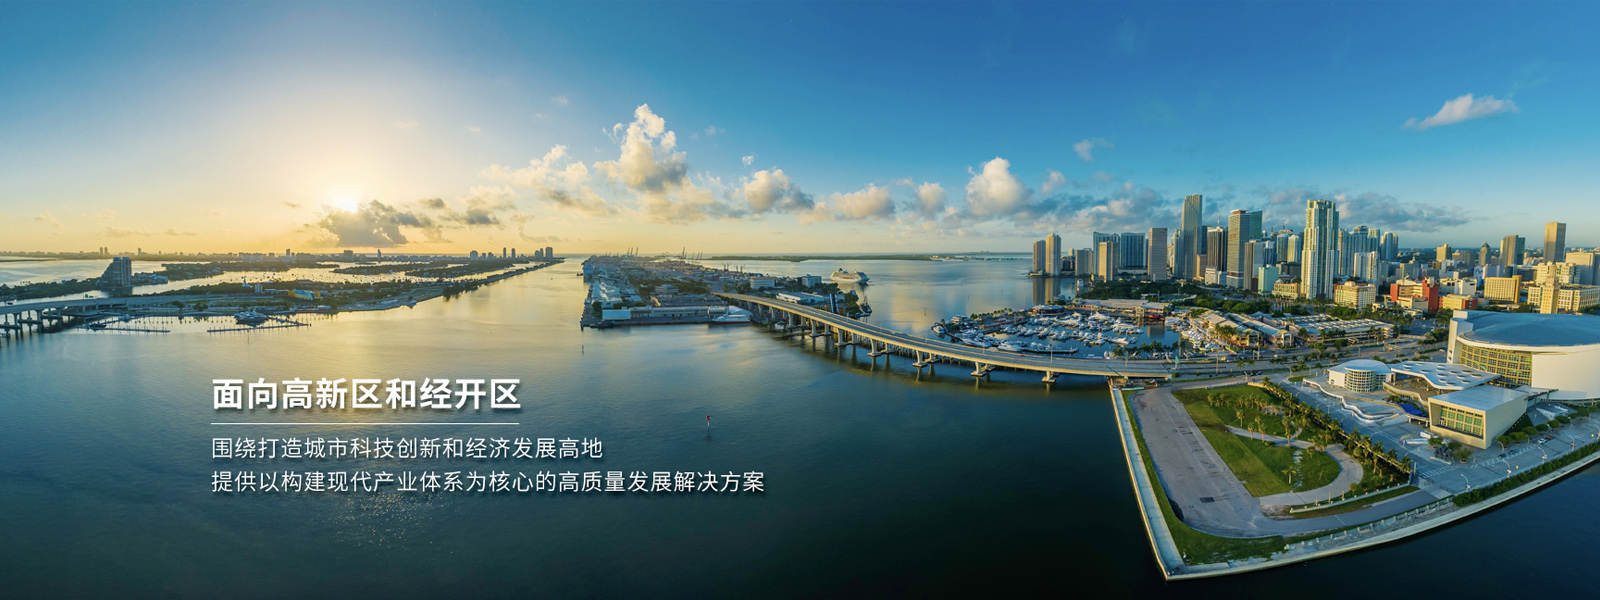 立足大湾区，面向全中国，中大咨询致力于为中国地方政府提供专业的产业发展方案